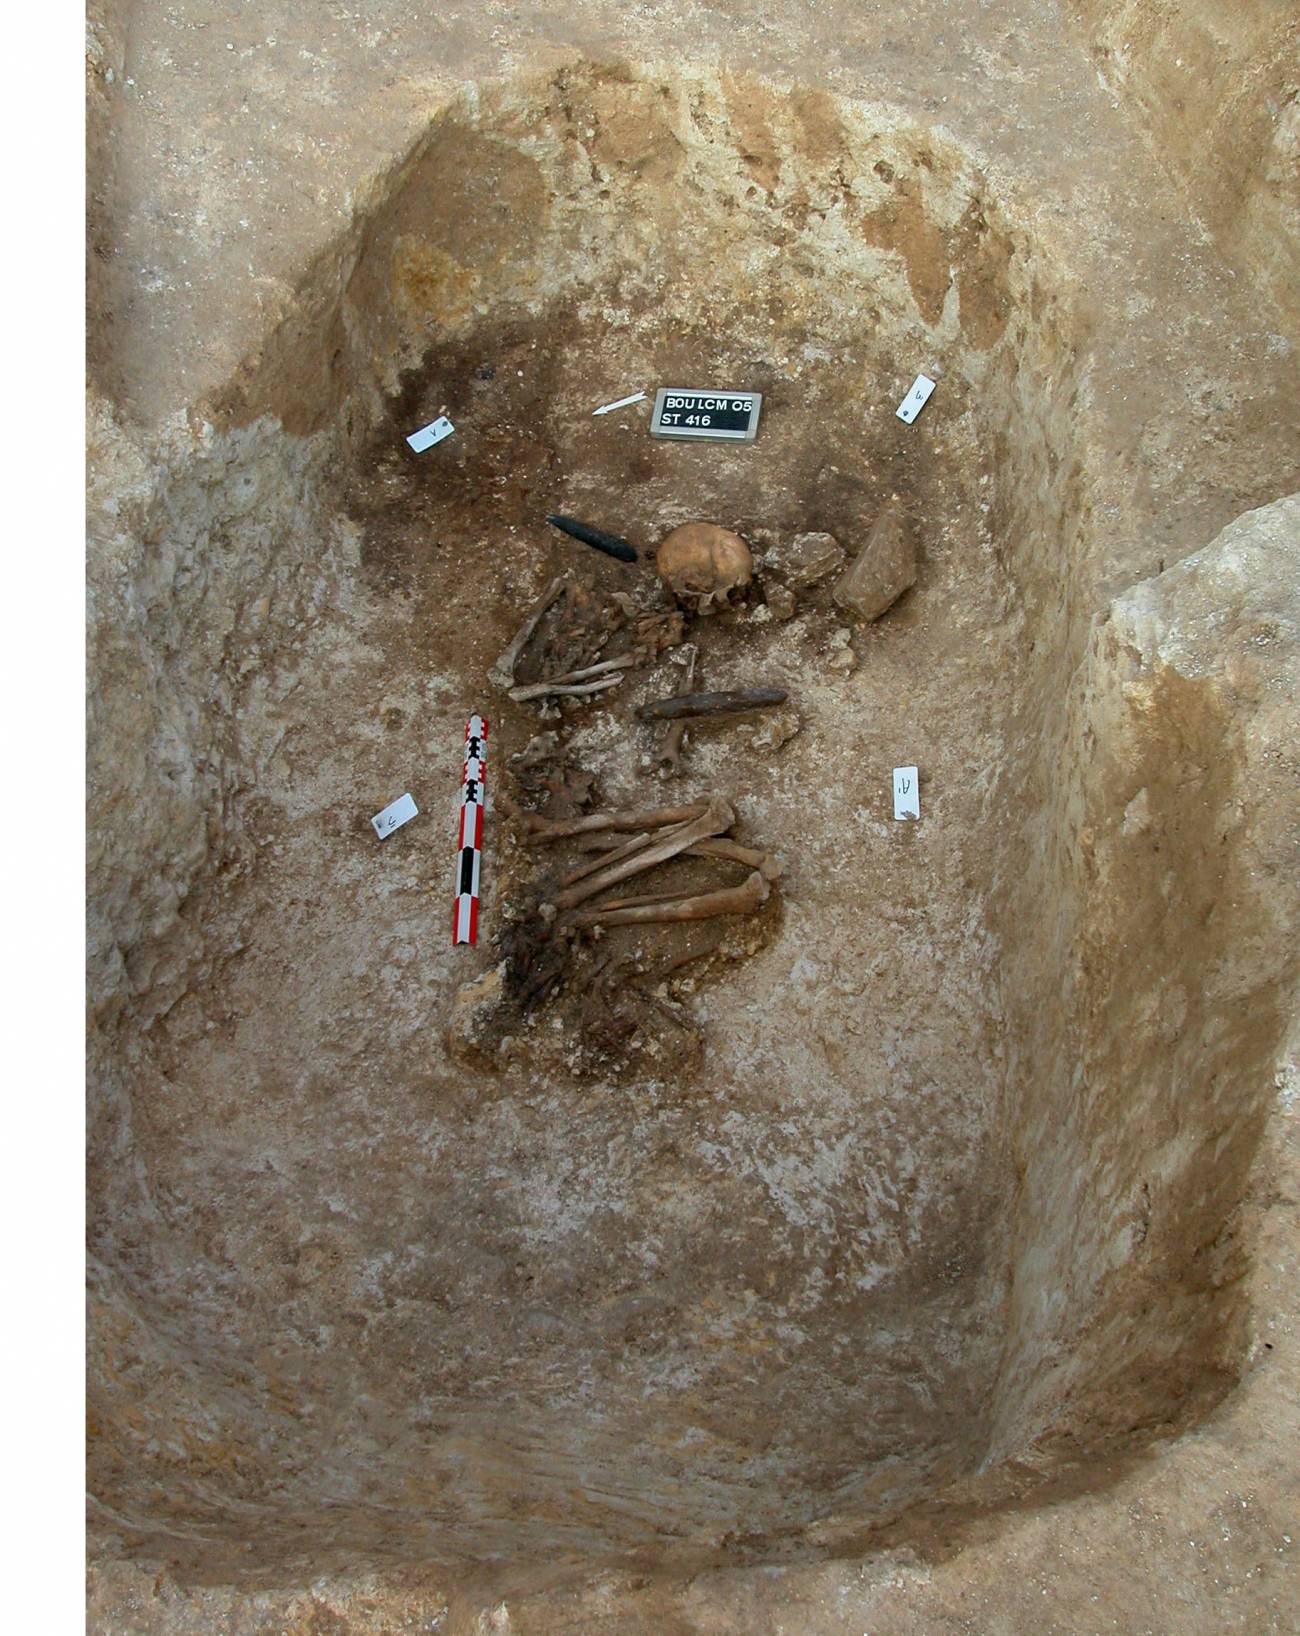 Descubren evidencias de una operación quirúrgica de hace casi 7.000 años